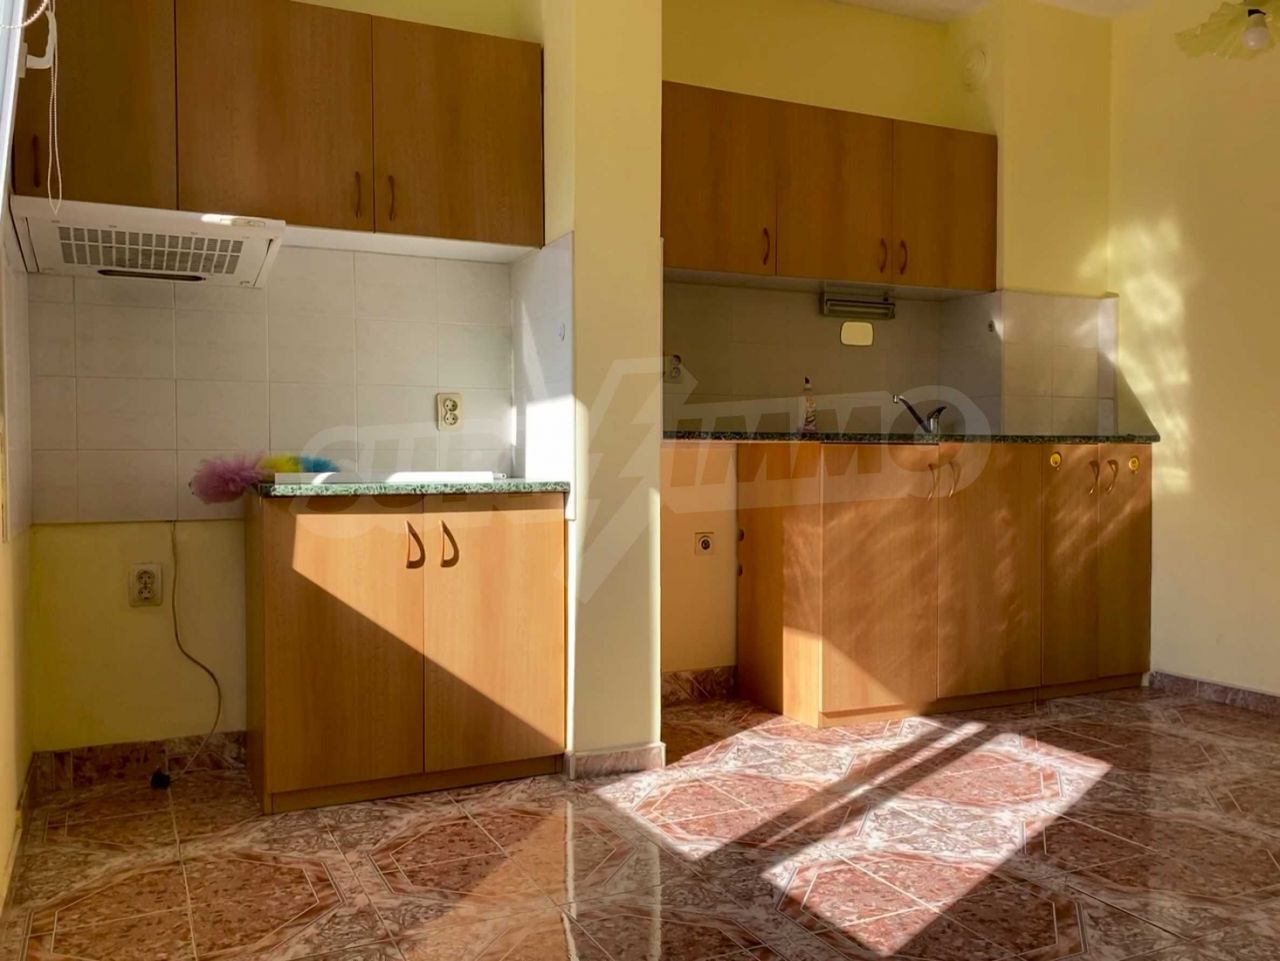 Apartment in Varna, Bulgaria, 60 sq.m - picture 1